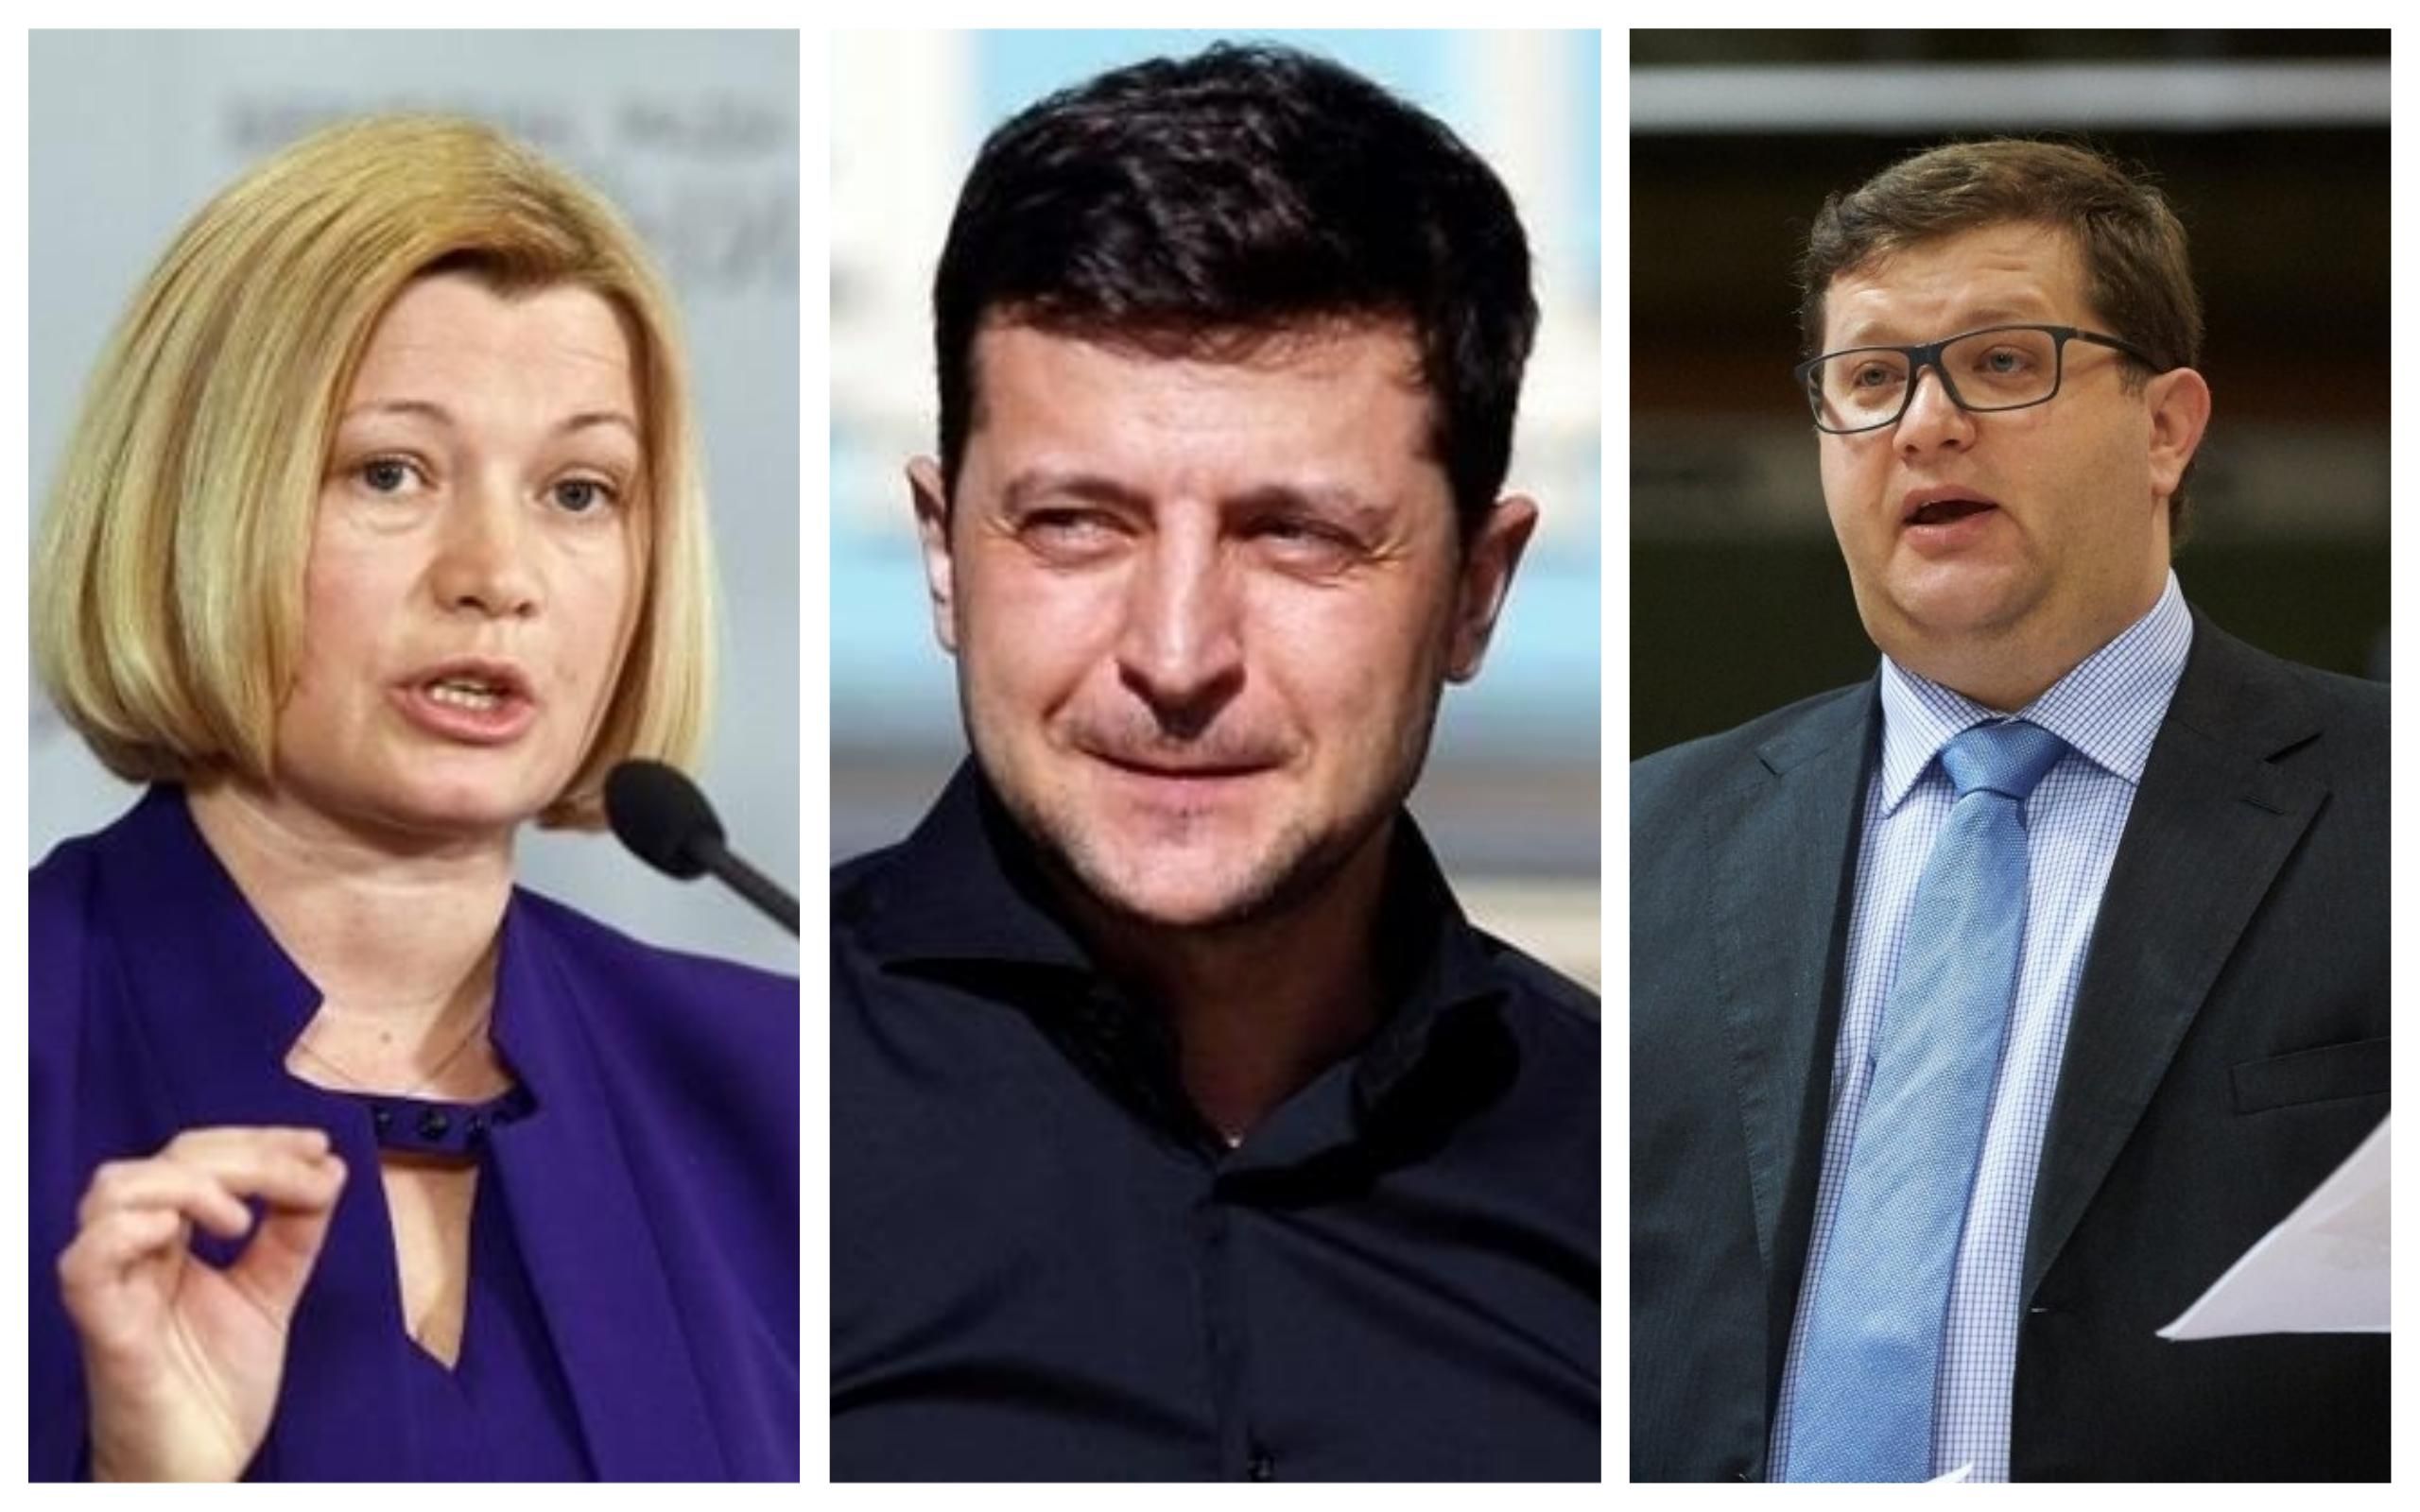 Не поверил глазам: украинские политики шокированы заявлением Зеленского о России и наемниках